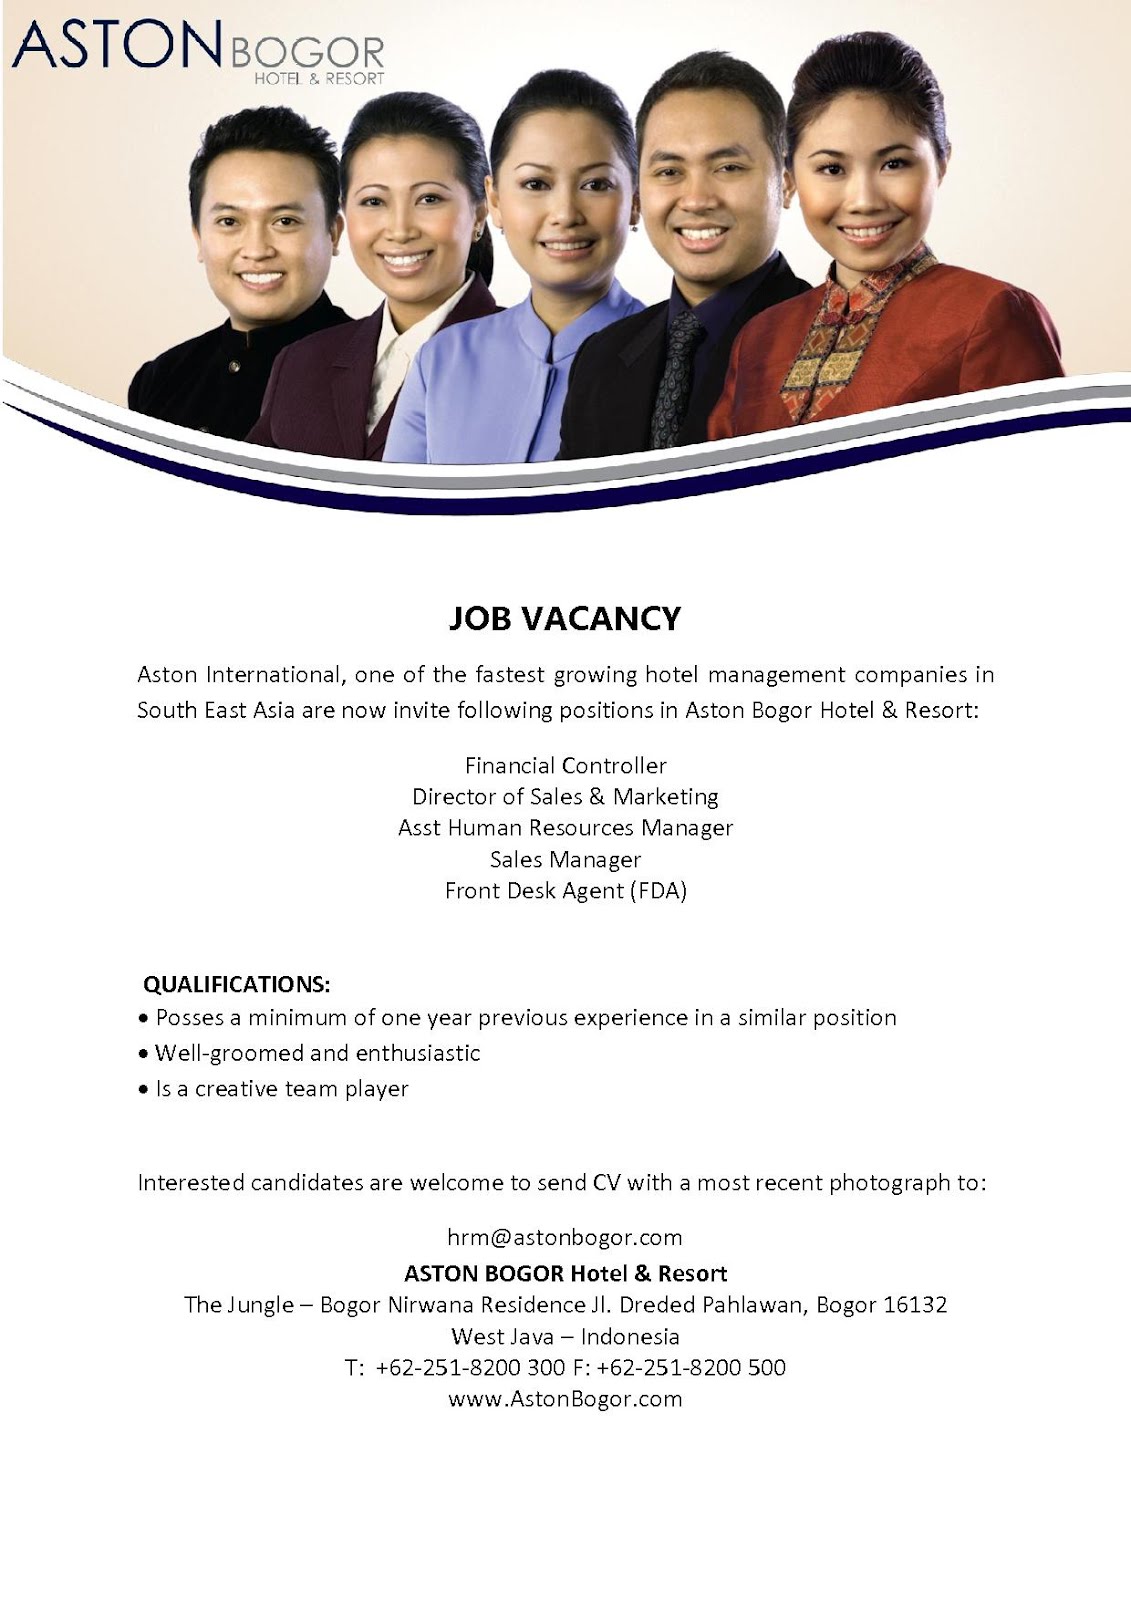 HHRMA BOGOR JOB VACANCY - ASTON BOGOR  Indonesia Job Vacancy